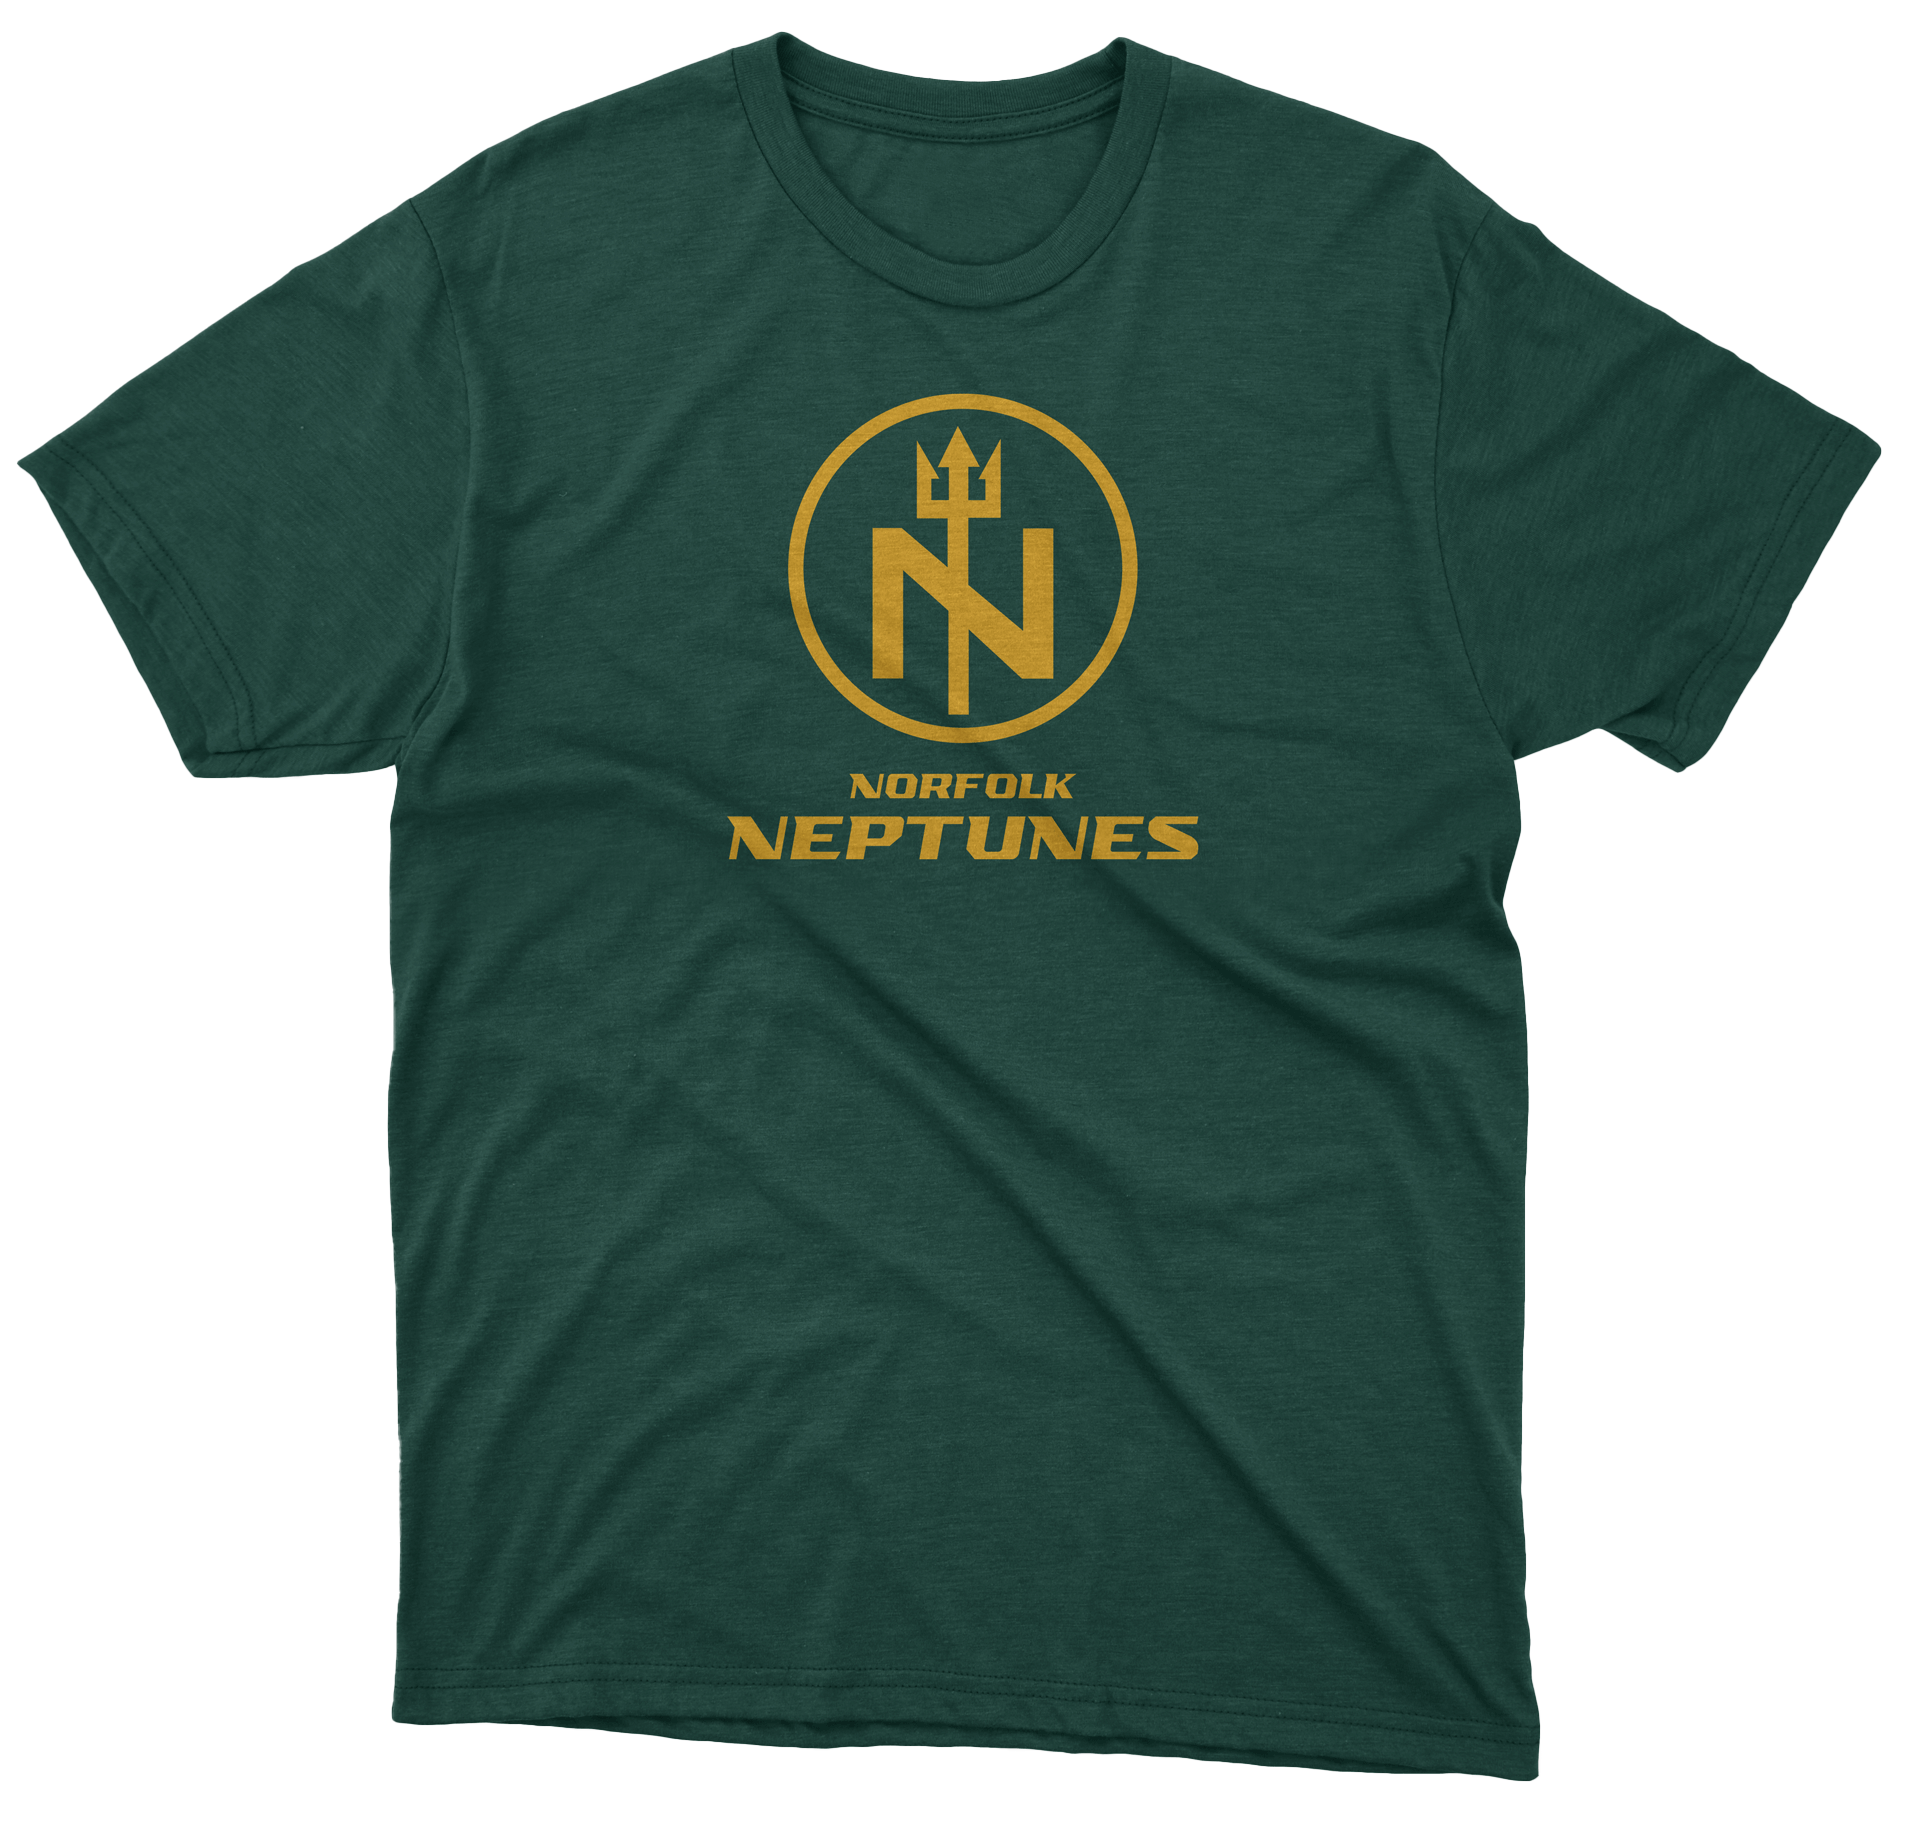 Norfolk Neptunes T-shirt green